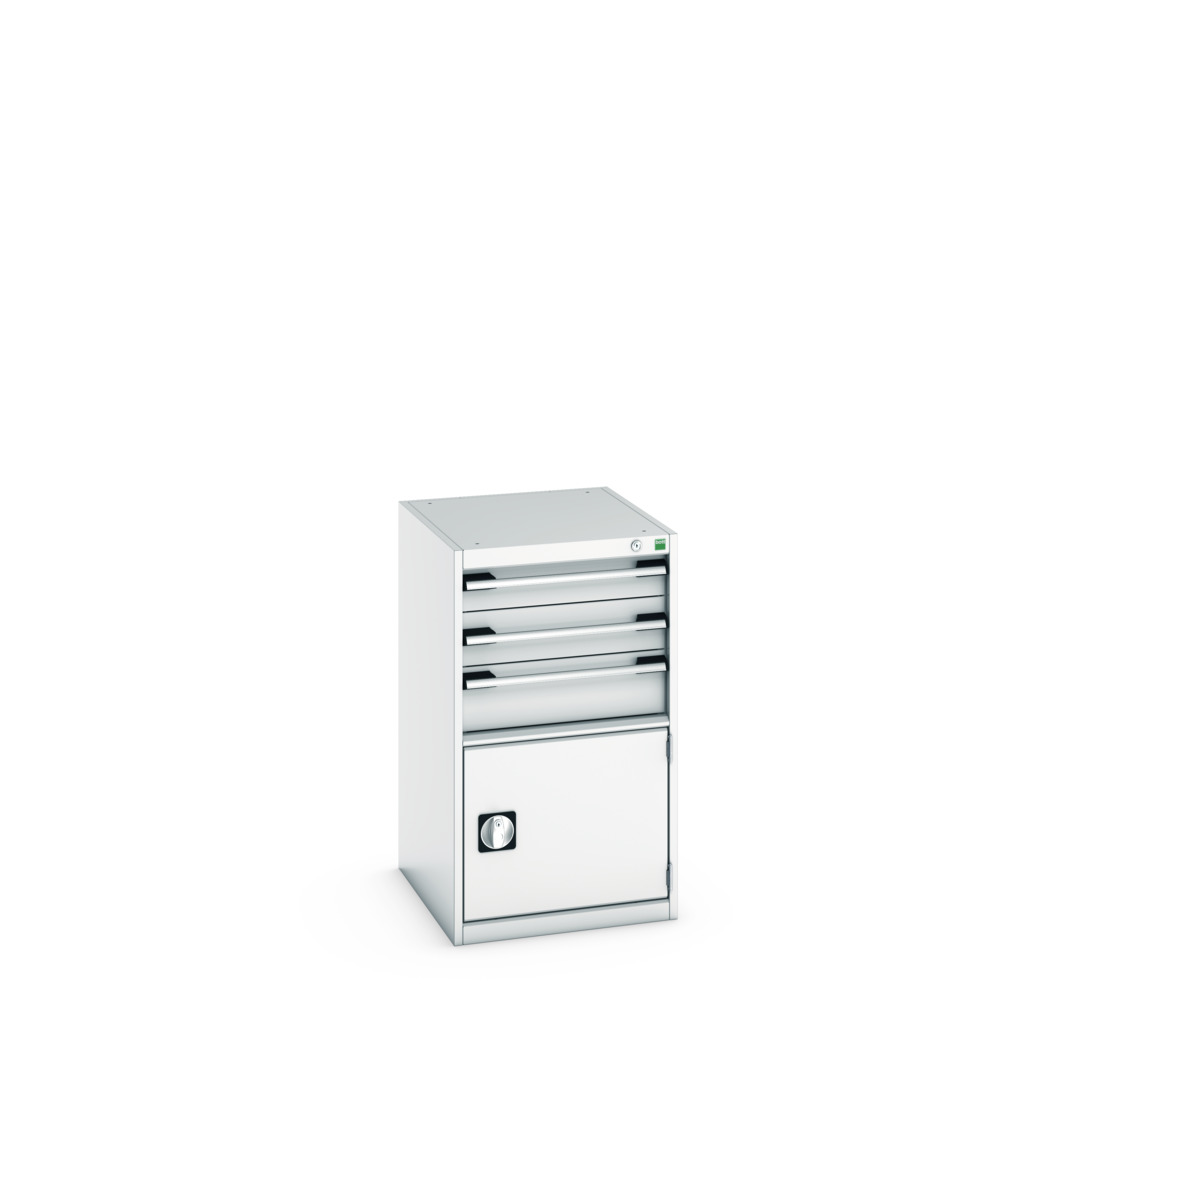 40018043.16V - cubio drawer-door cabinet